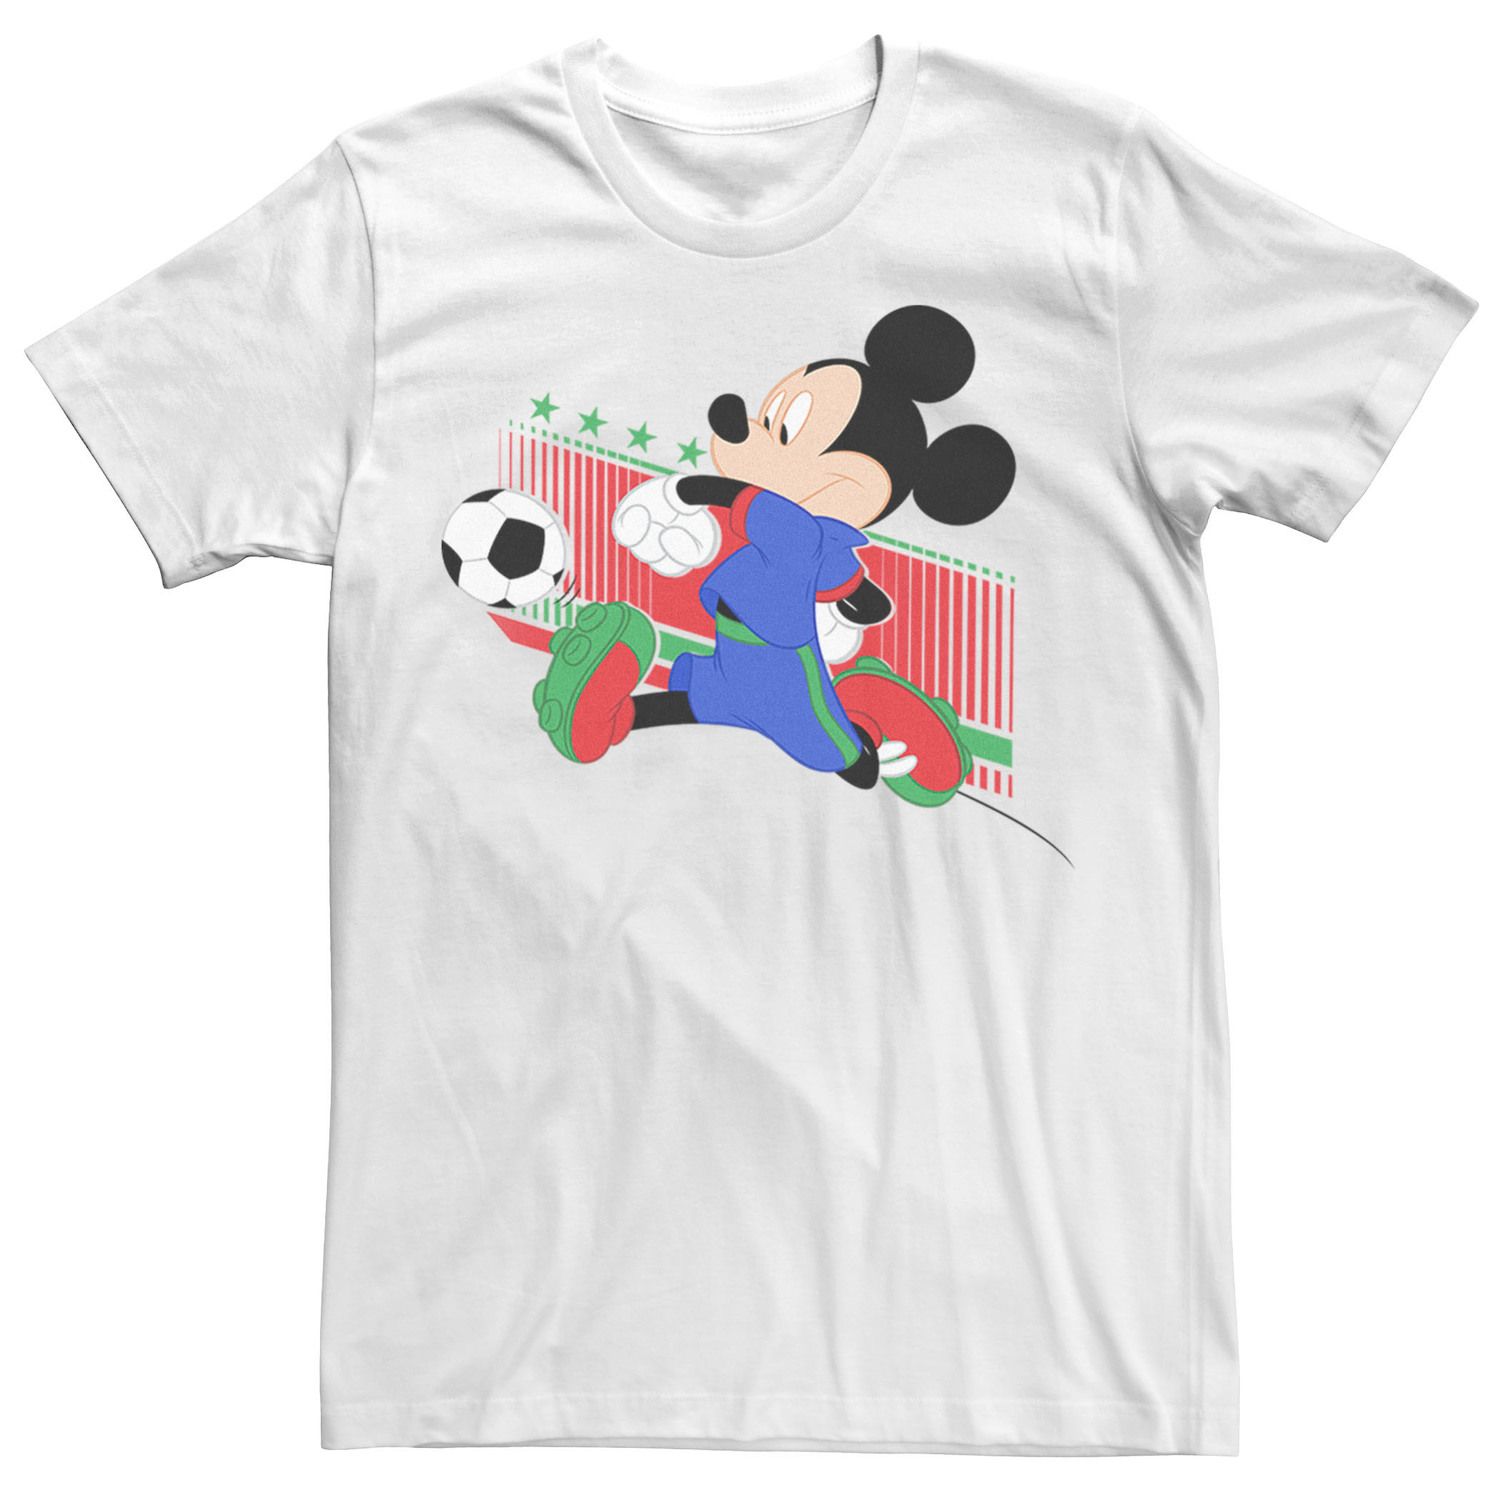 Мужская футболка с портретом Микки Мауса, итальянская футбольная форма Disney мужская футболка с изображением микки мауса бразильская футбольная форма портретная футболка disney